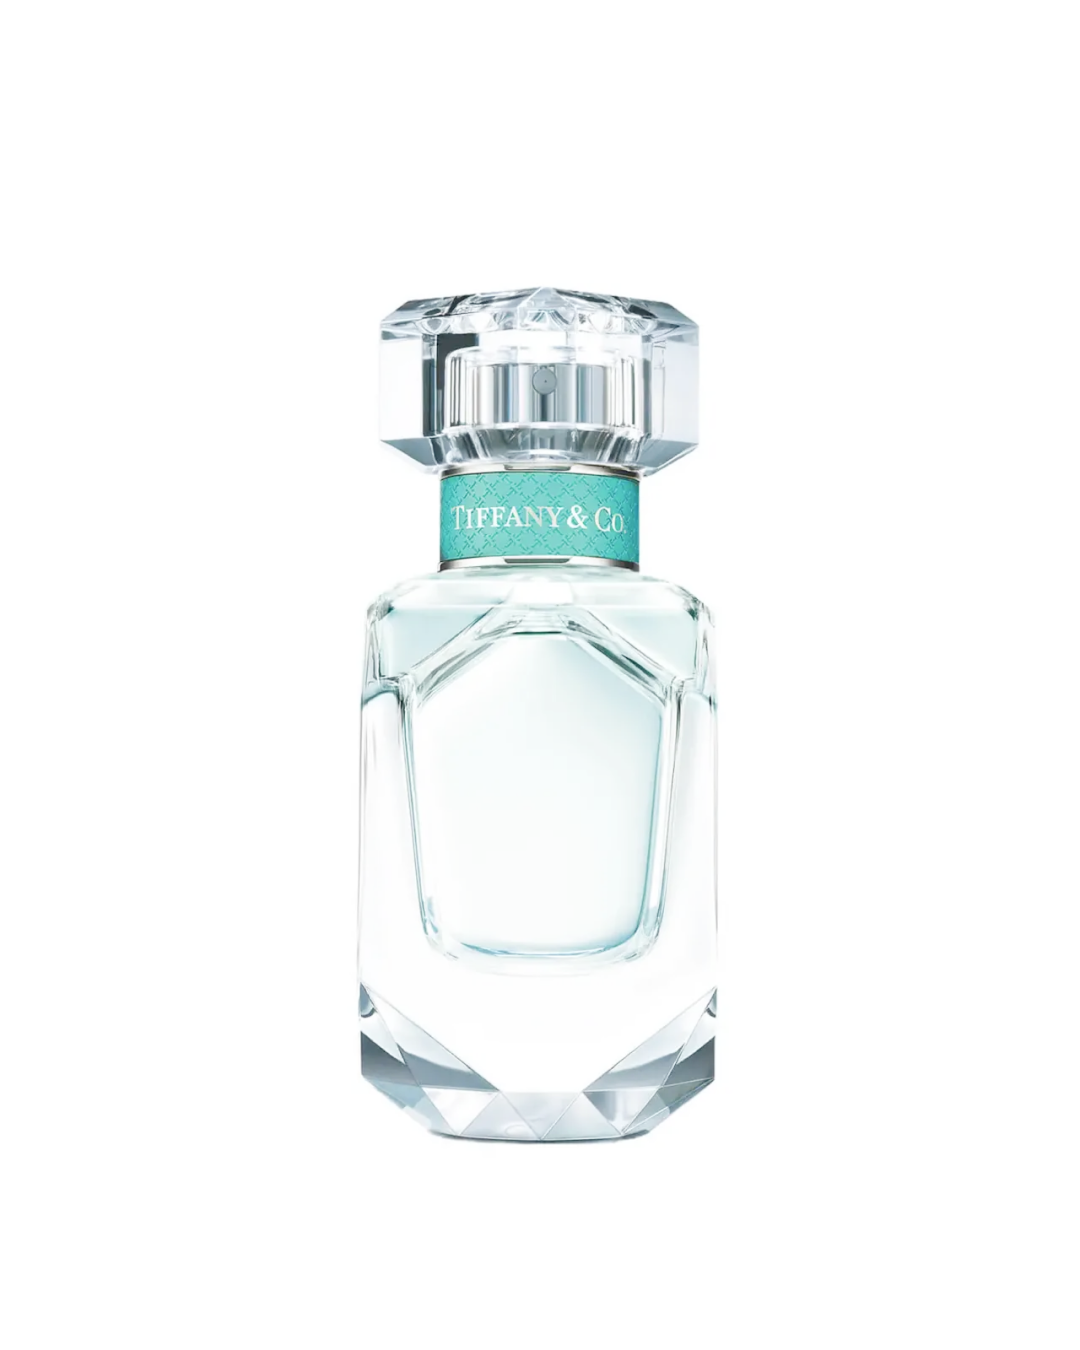 Tiffany & Co. Tiffany Eau de Parfum (30ml) - Best Buy World Philippines